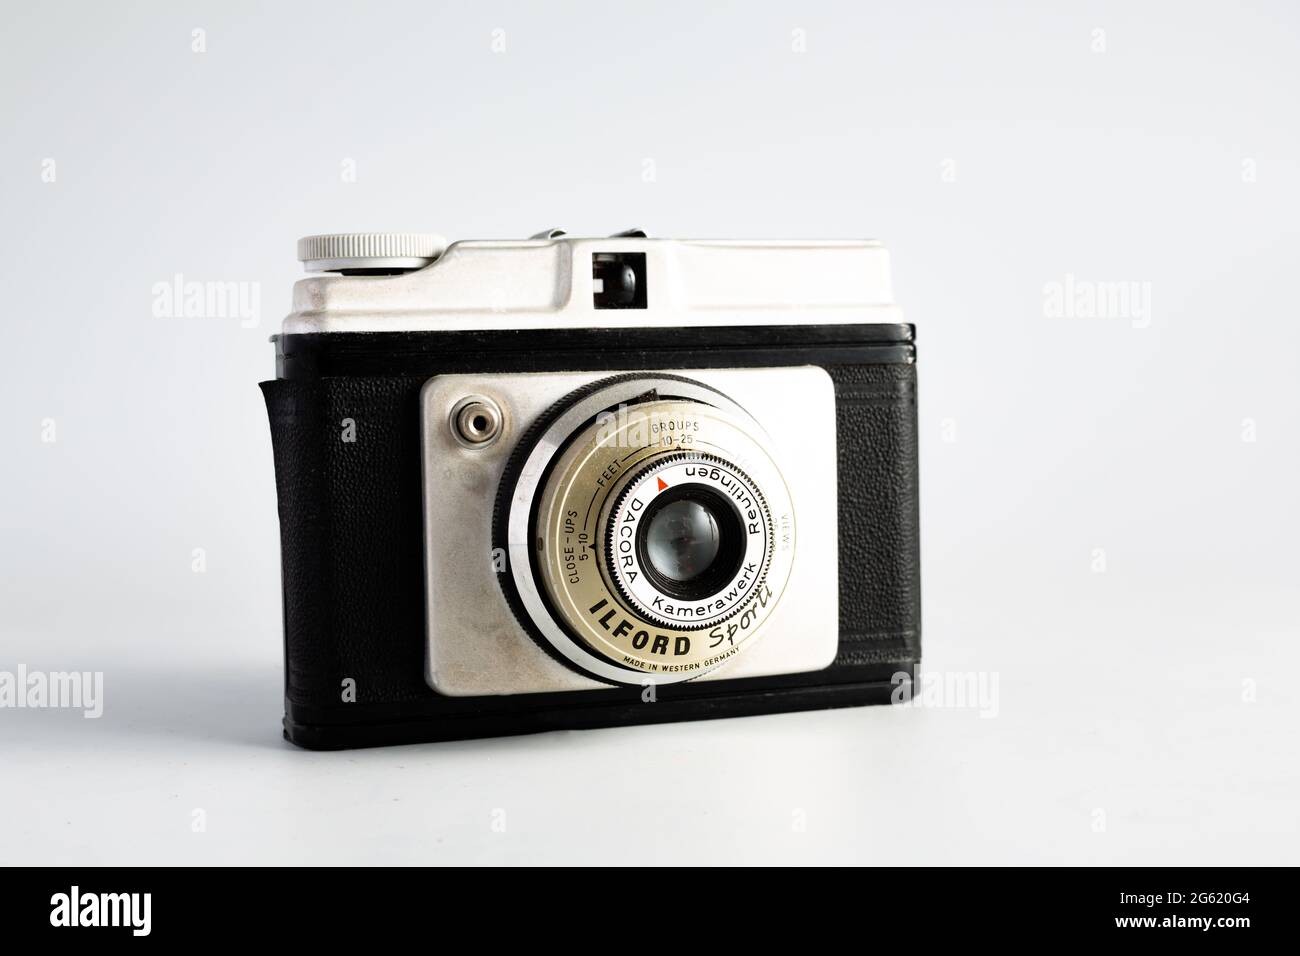 Woodbridge Suffolk UK juin 29 2021: Un classique Dacora Kamerawerk caméra de film isolée sur un fond blanc Banque D'Images